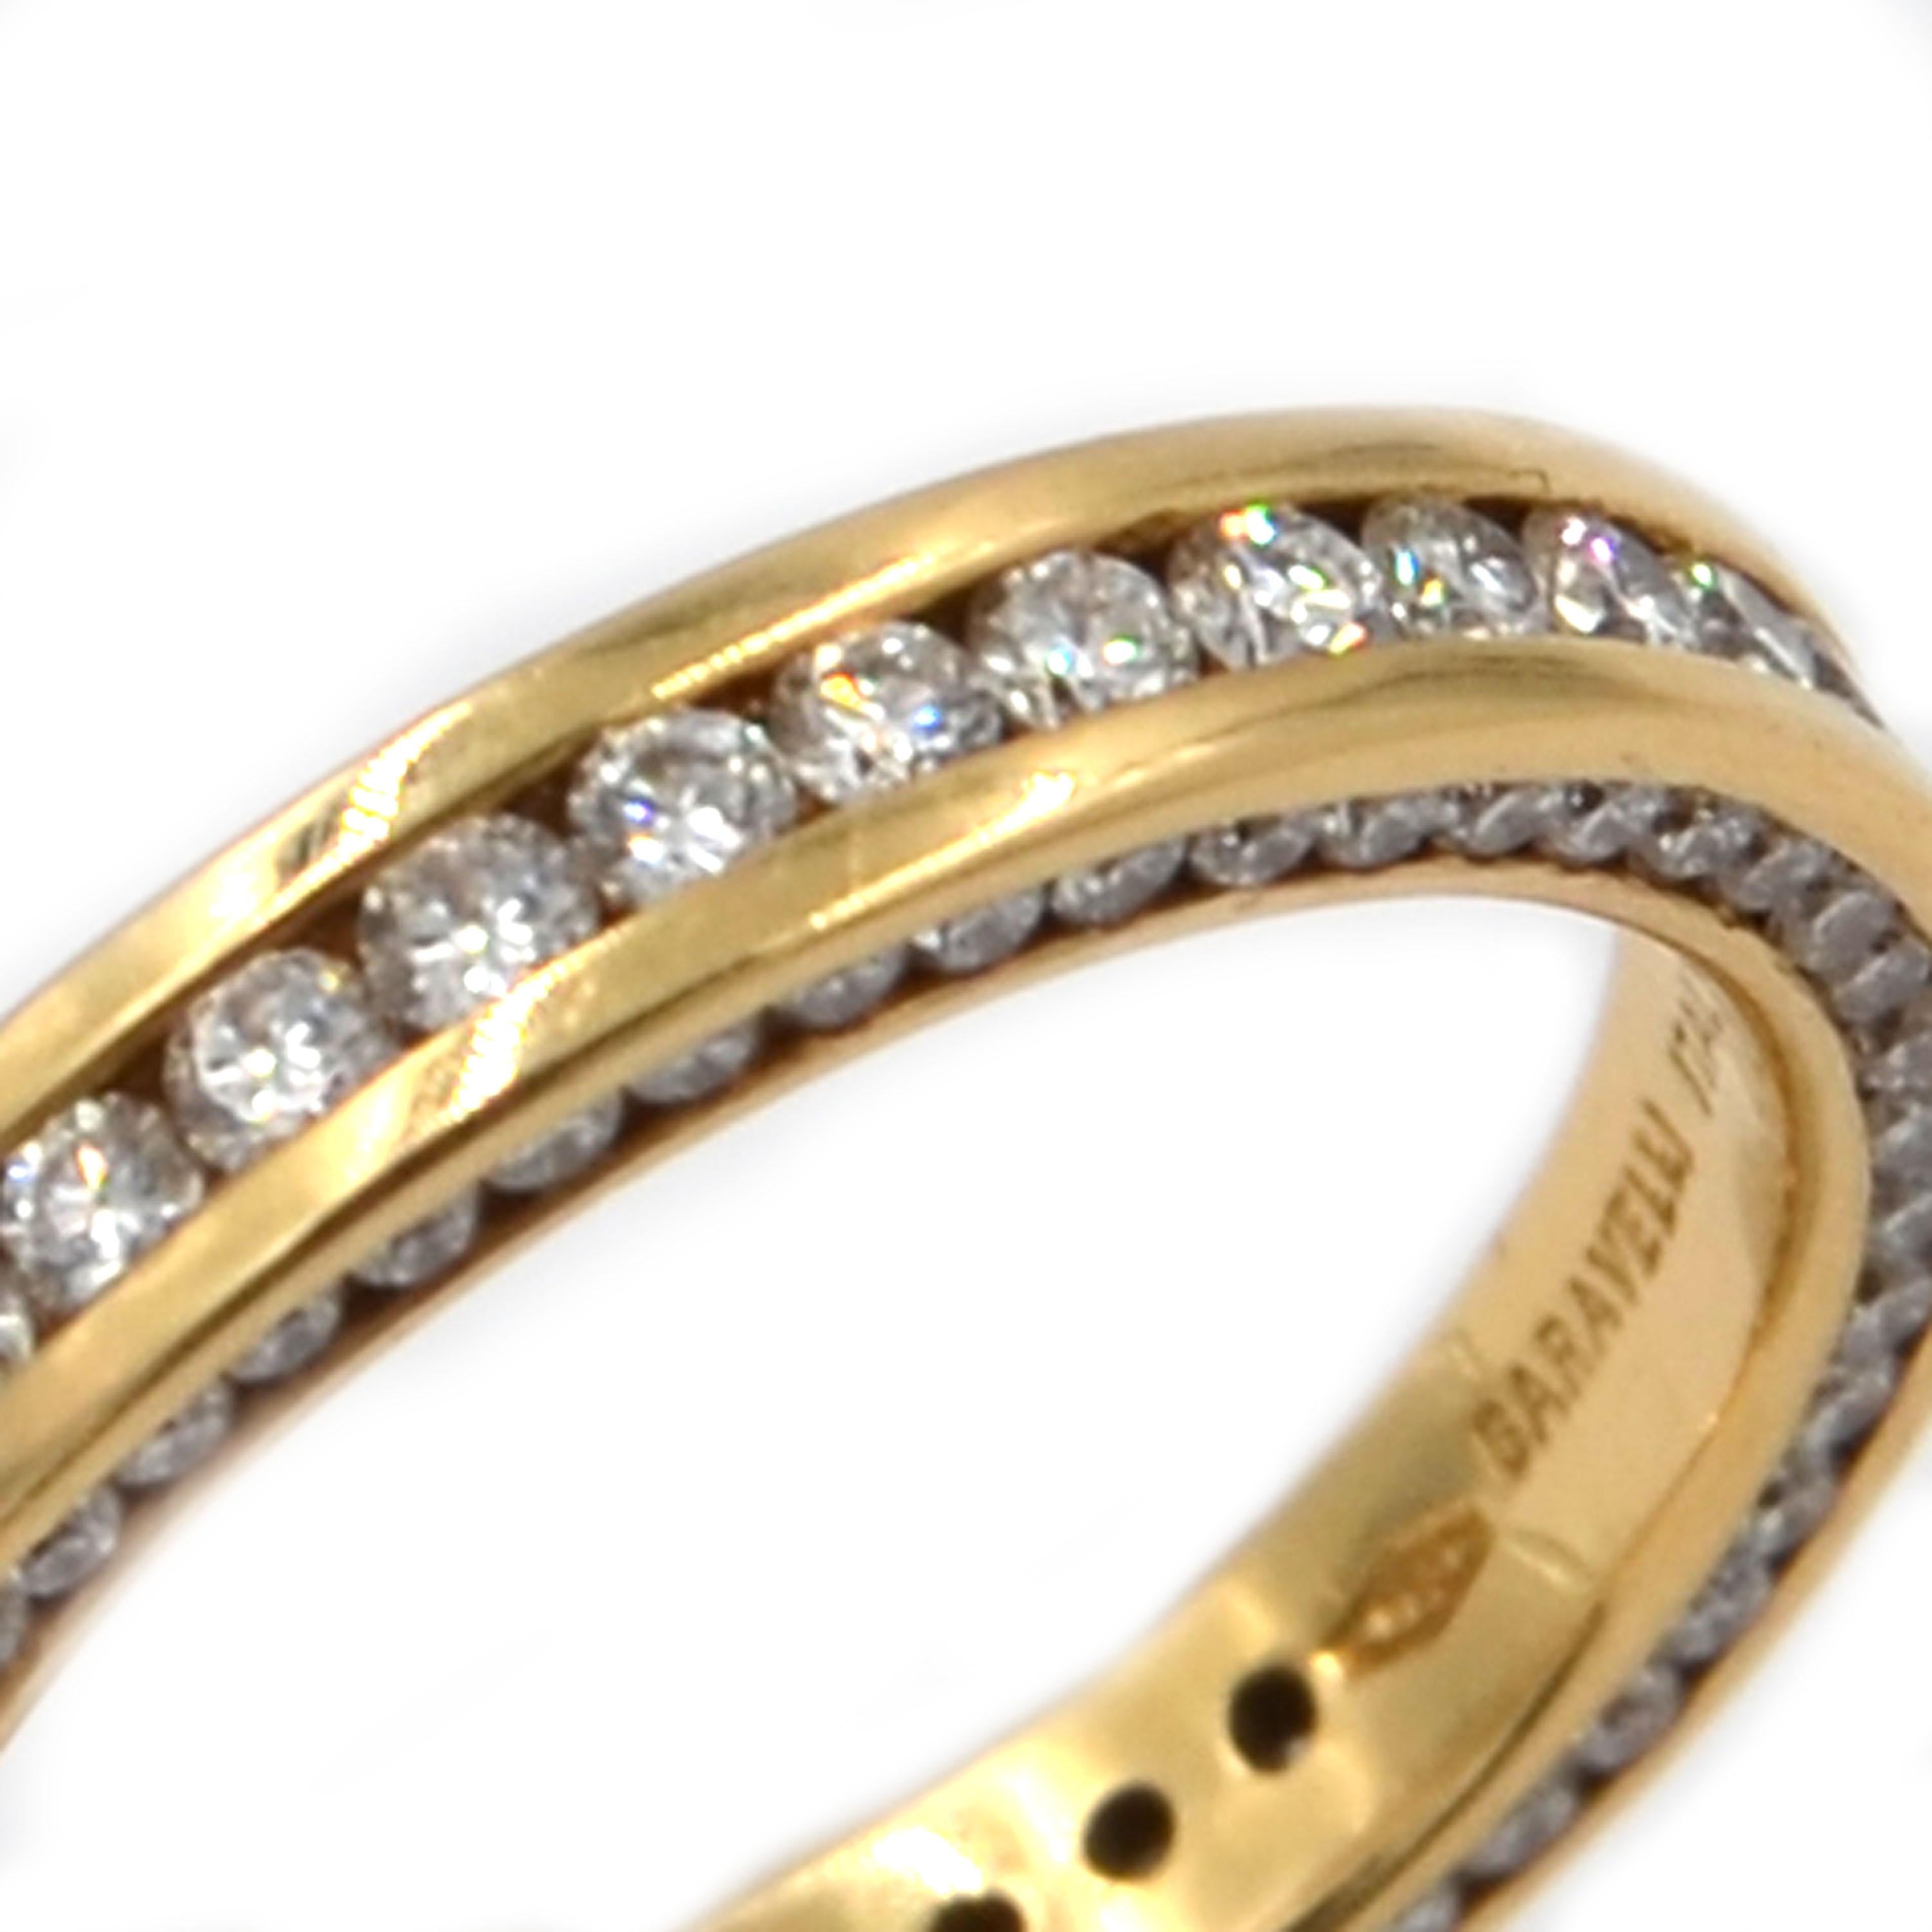 Garavelli 18 Karat Gelbgold Diamanten Eternity Band Ring, Größe 54
Dieses interessante Band ist an den drei Seiten mit weißen Diamanten besetzt.
Hergestellt in Italien 
18kt GOLD gr :4.60
WEISSE DIAMONEN ct 1.61